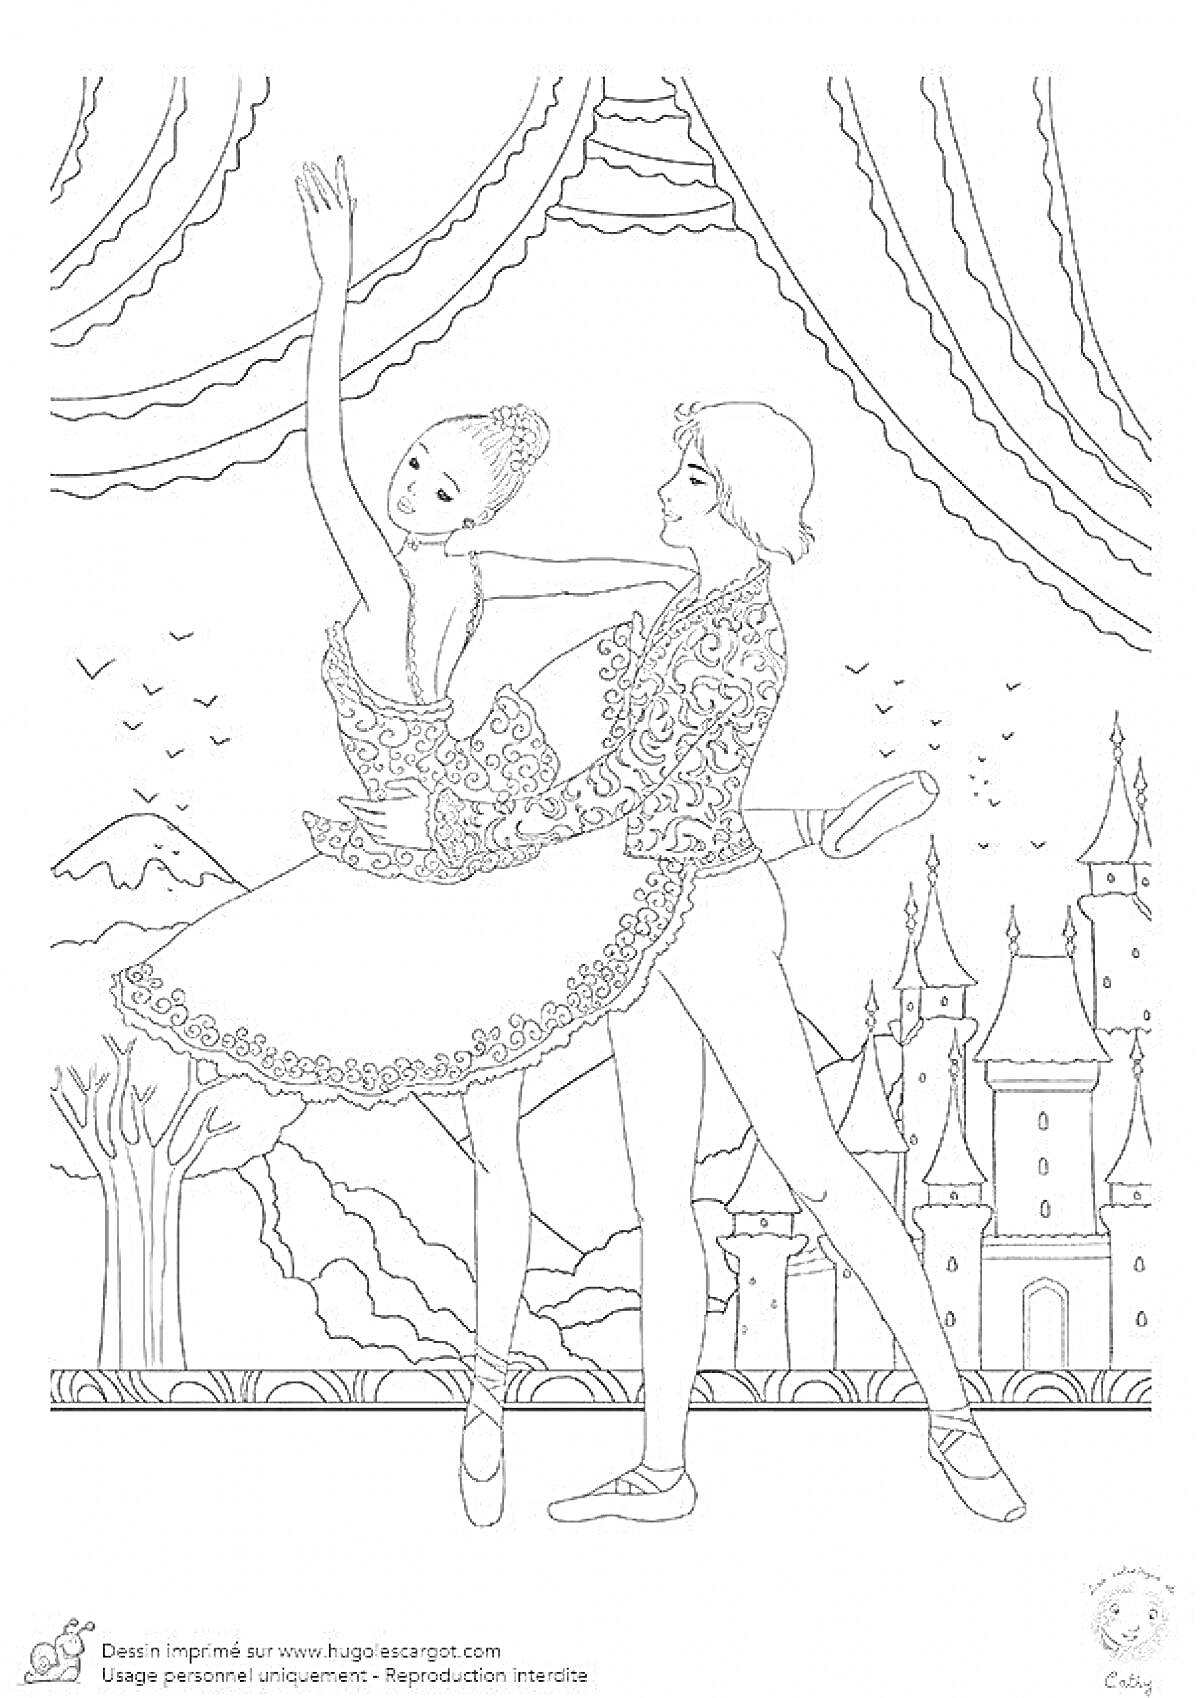 Раскраска Балетная пара на фоне замка и занавеса, с пролетающими птицами и деревьями